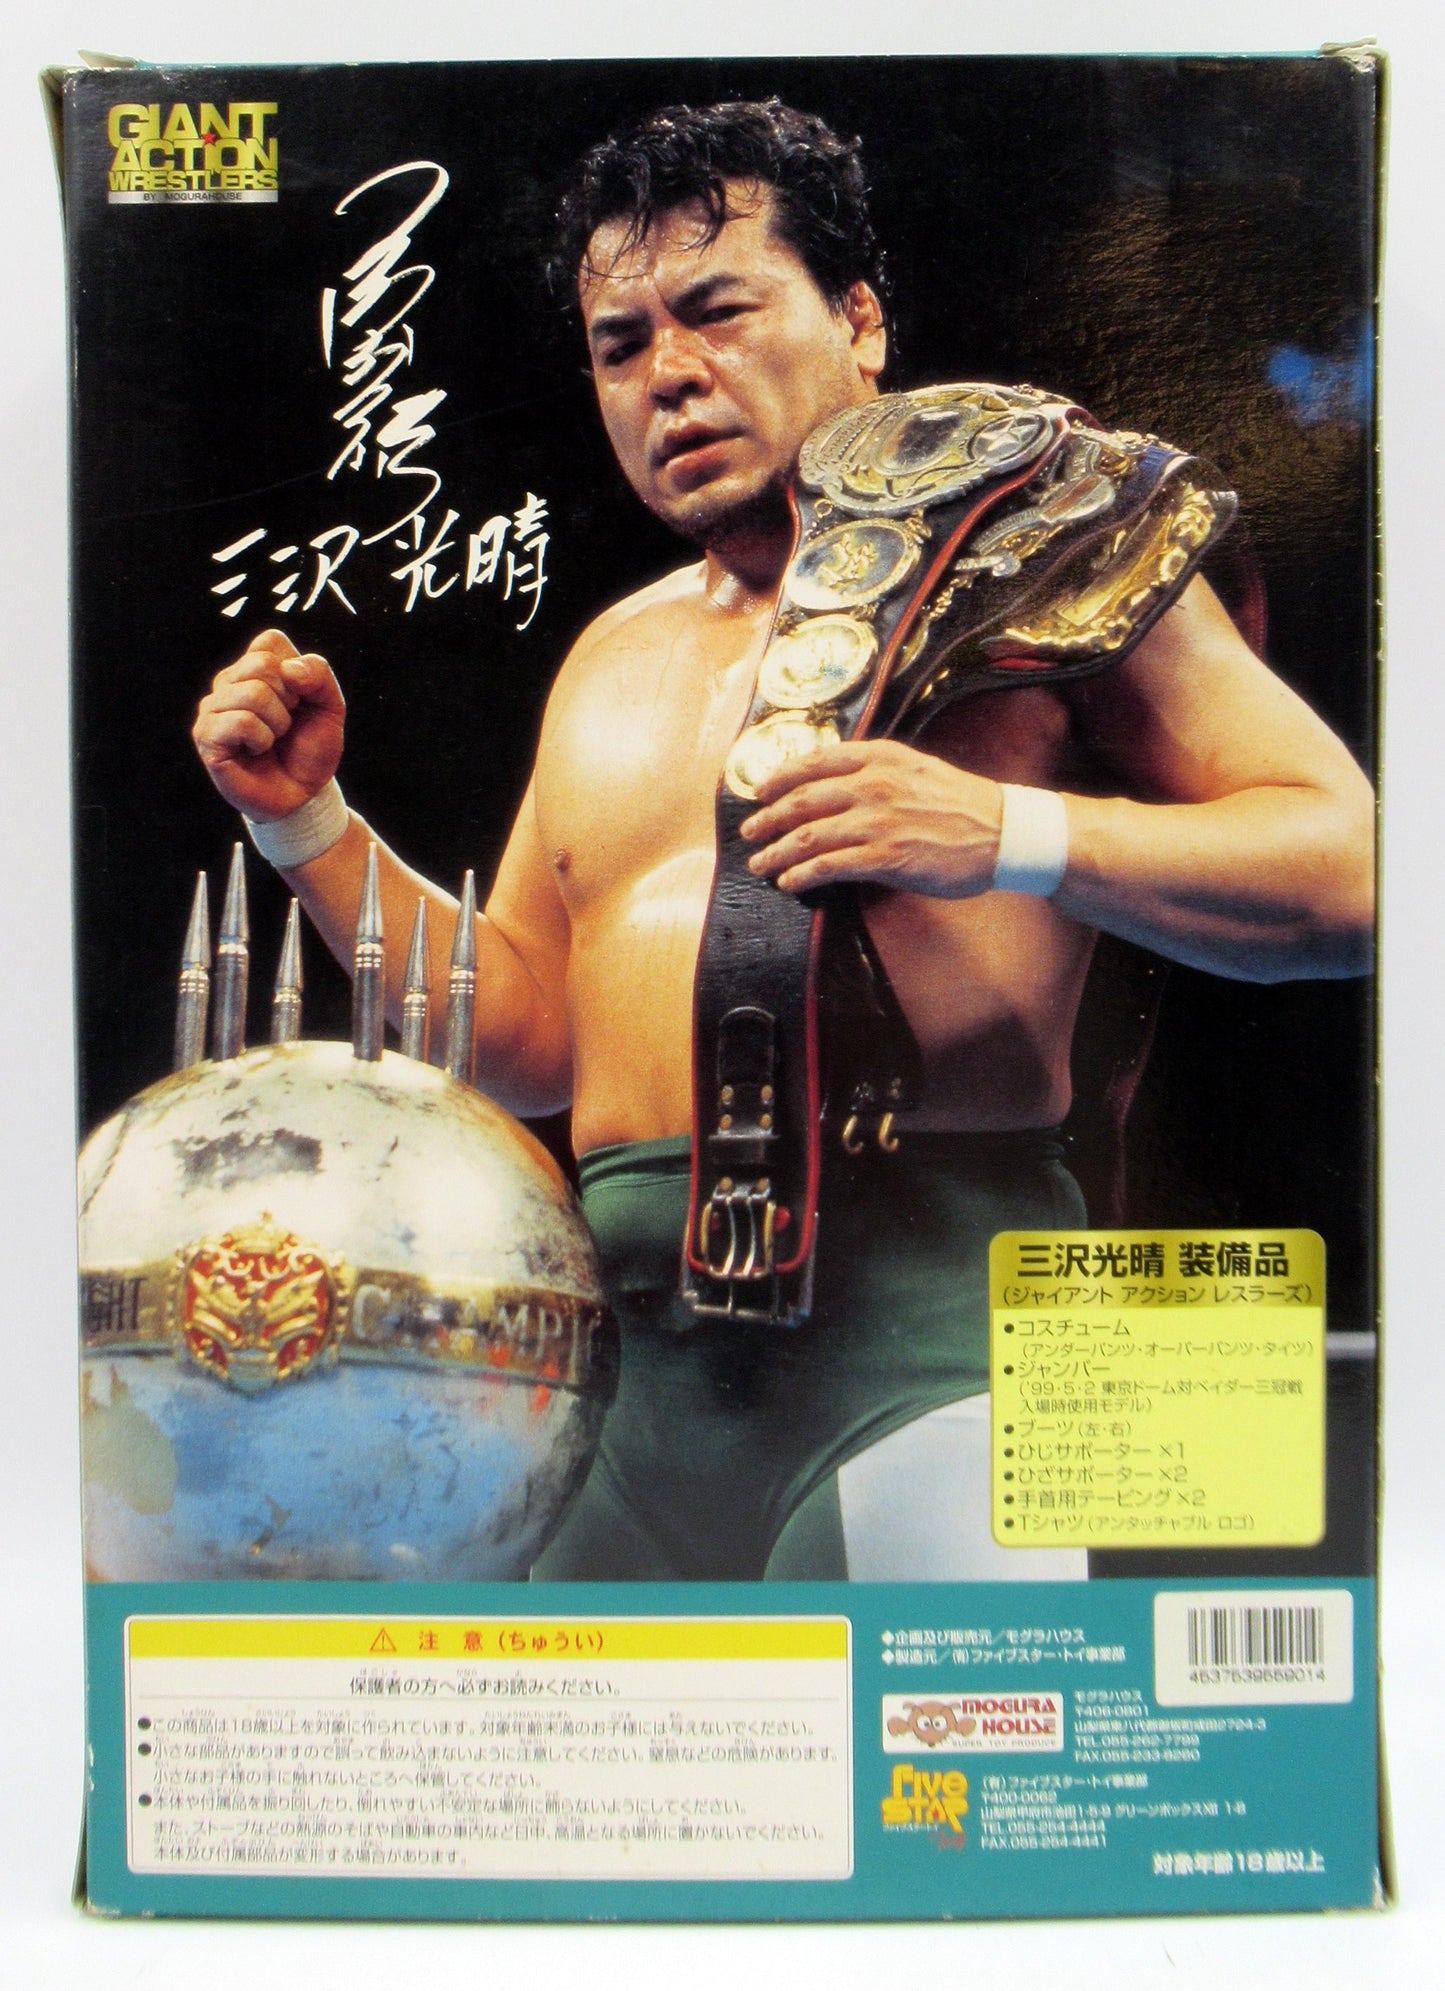 1999 Mogura House Giant Action Wrestlers Limited Edition Mitsuharu Misawa